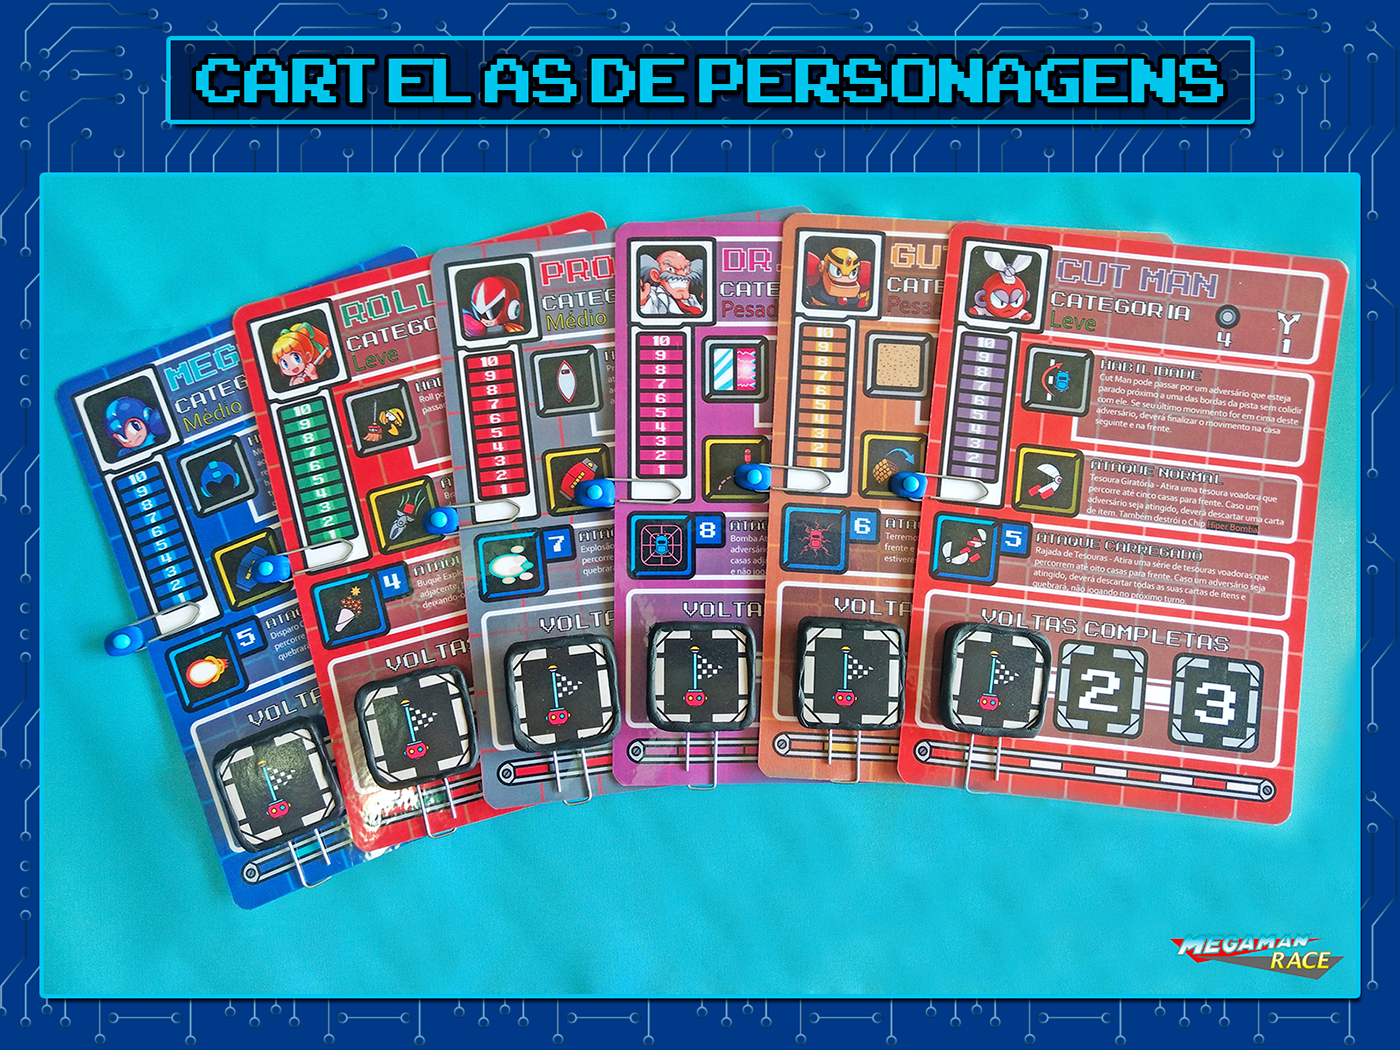 Mega Man capcom Mega Man Race board game Jogo de Tabuleiro Tabuleiro Jogo de mesa corrida